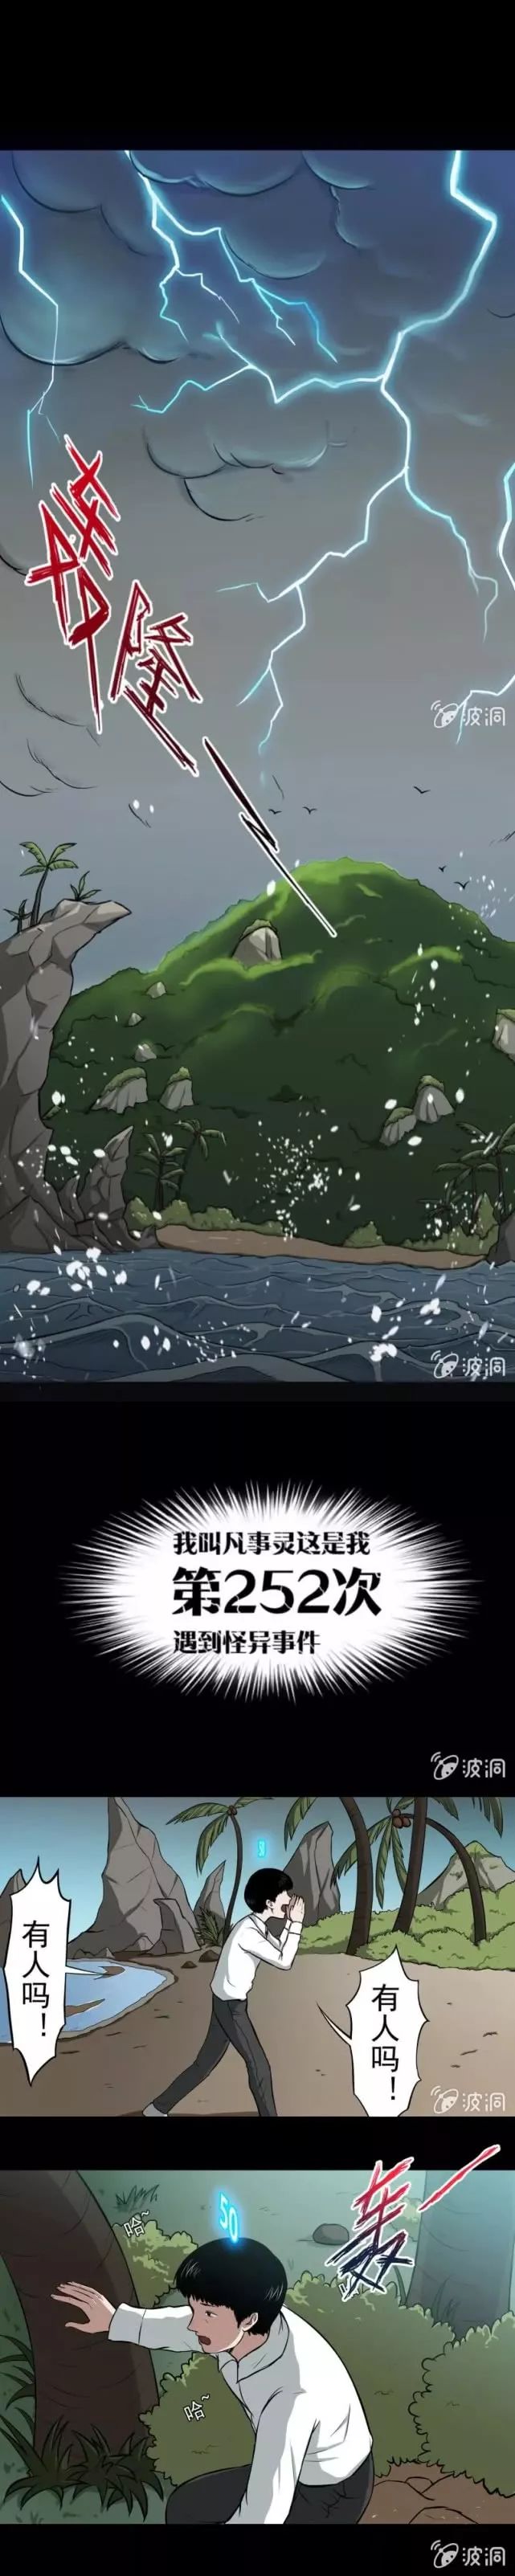 驚悚漫畫《荒島》被困荒島的男女 靈異 第3張